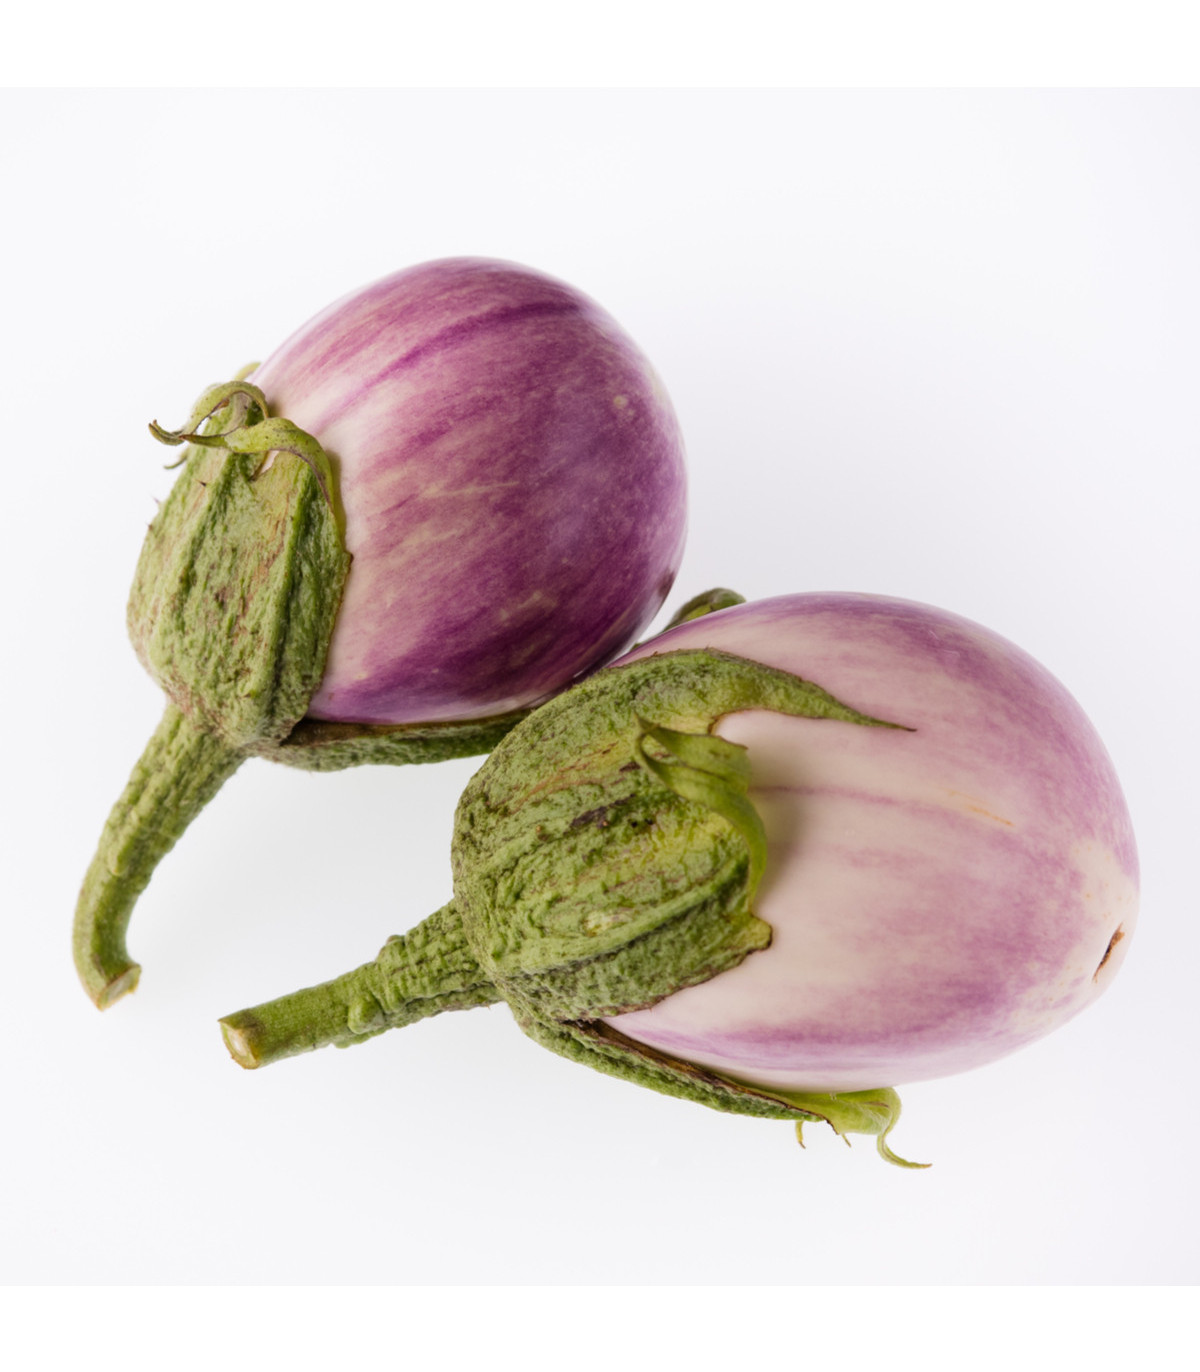 Lilek Rosa Bianca - Baklažán - Solanum melongena - osivo lilku - 6 ks